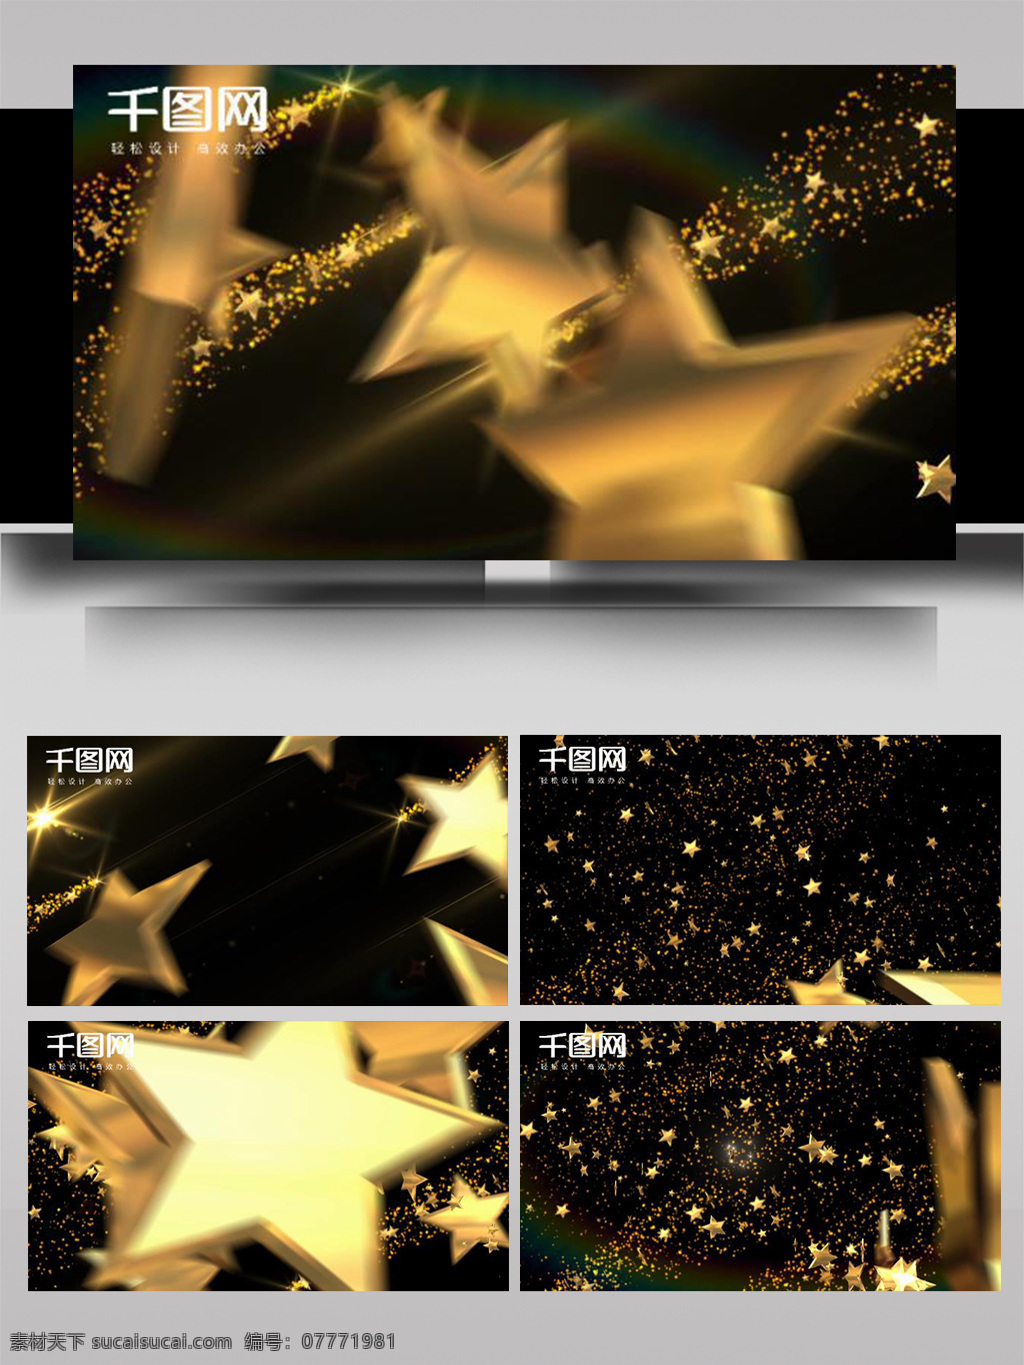 立体 五角星 转场 过渡 ae 模板 金色 彩色 大气 多边形 简洁 旋转 散开 组合 光影 动态 动画 展示